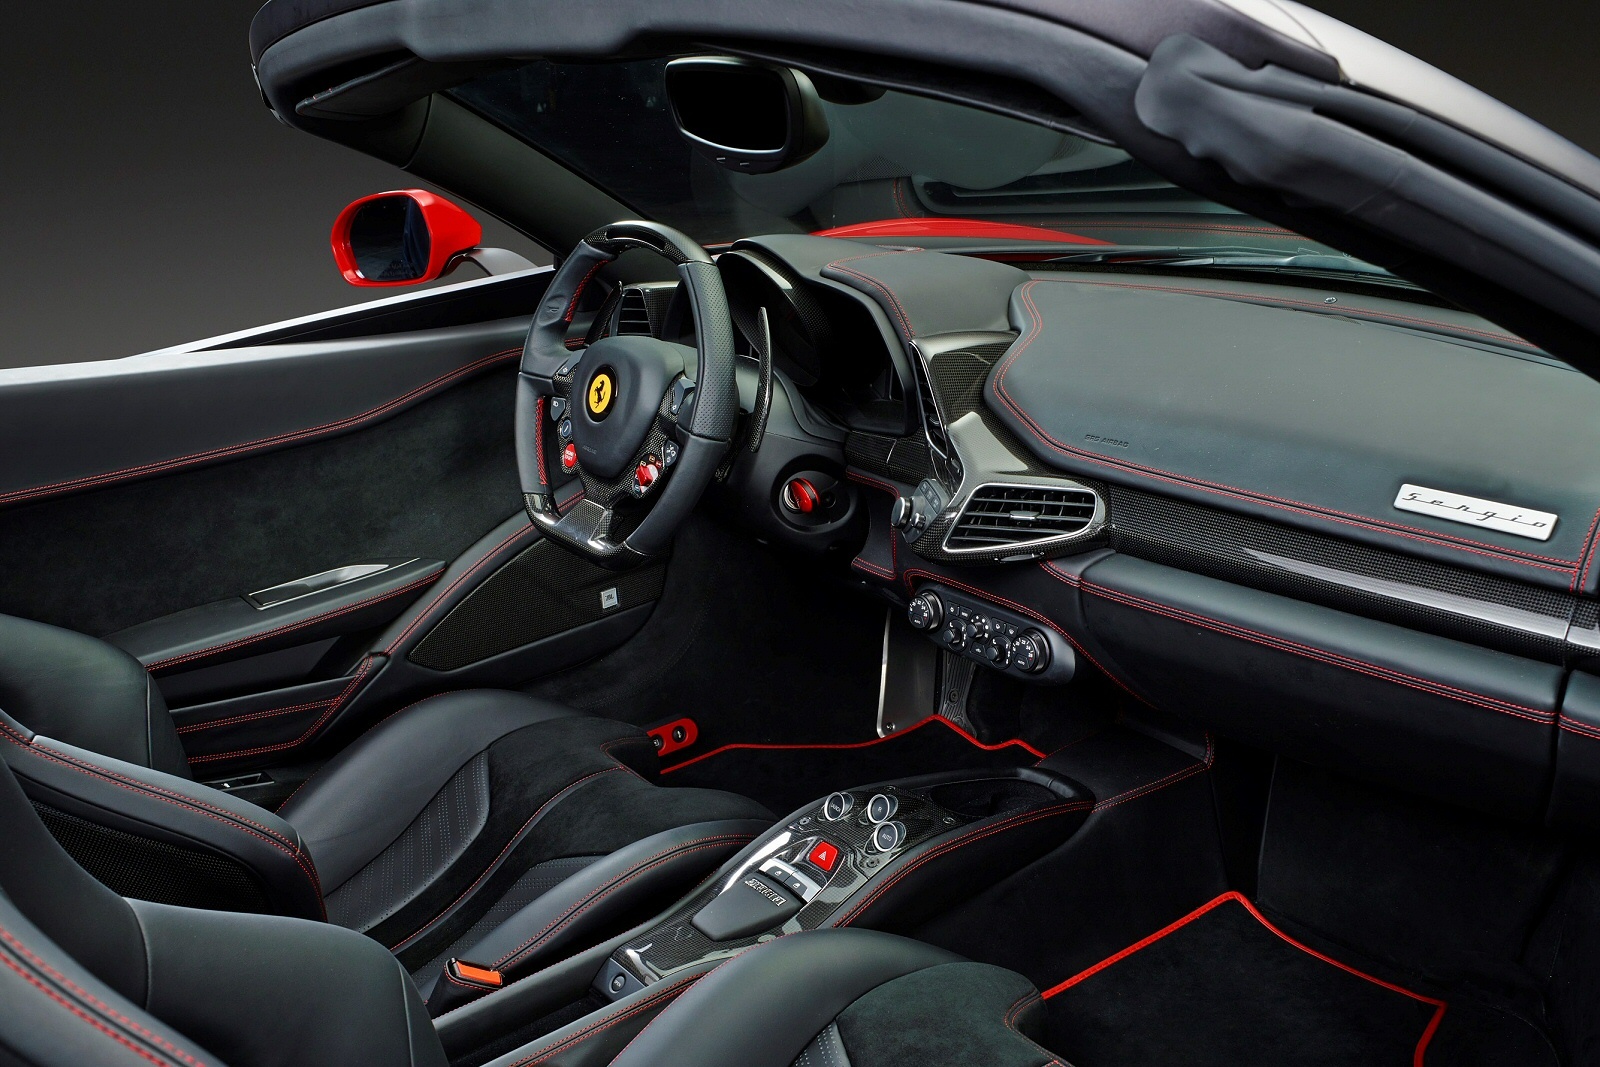 FerrariSergio0115Int